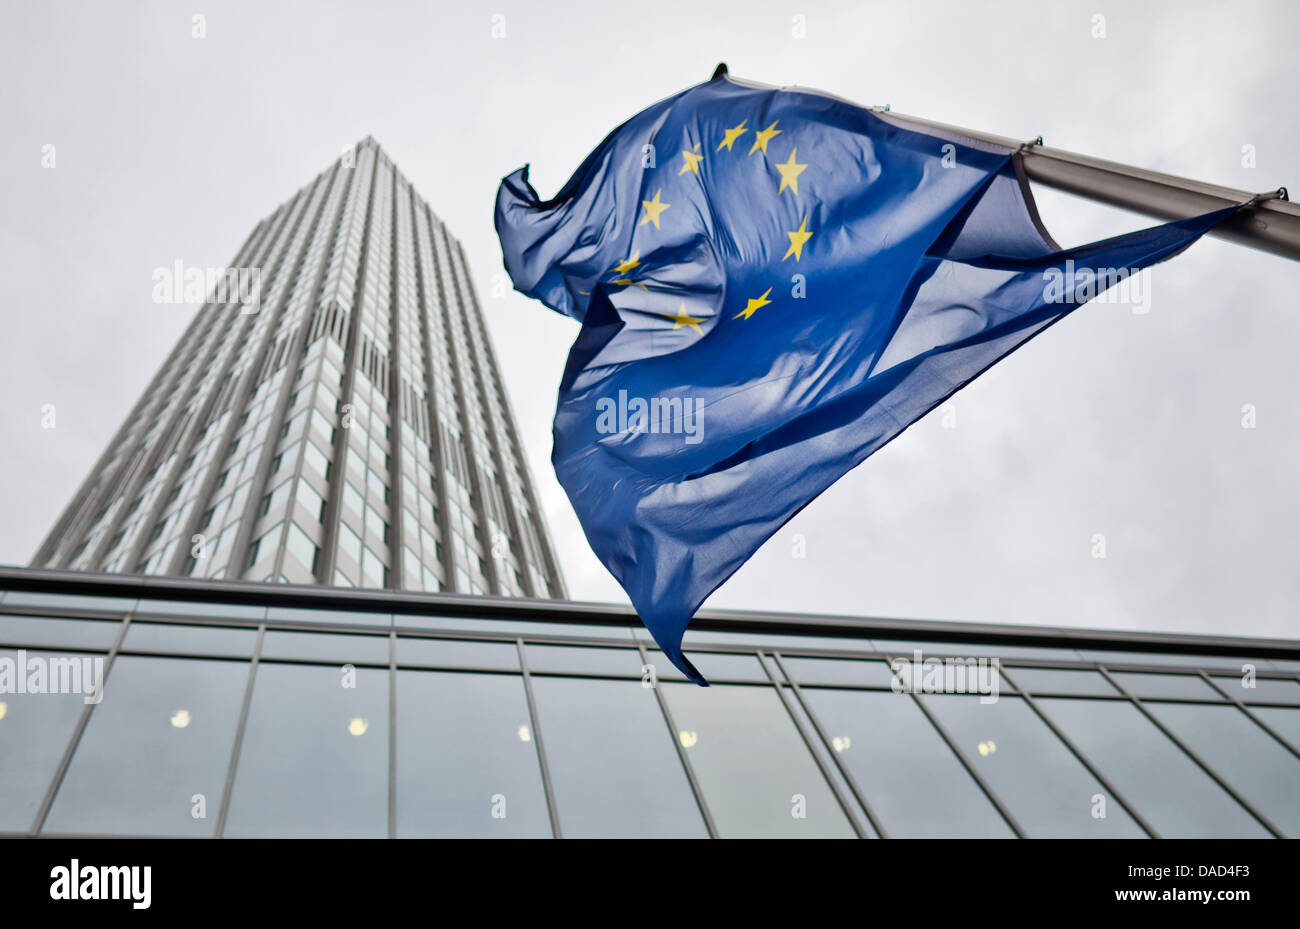 Le drapeau de l'Union européenne oscillent dans le vent devant le siège social de la Banque centrale européenne (BCE) à Francfort, Allemagne, 5 octobre 2011. La dégradation de la notation de crédit de l'Italie par l'agence de notation Moody n'a guère fait l'euro. L'euro a été évalué plus tôt ce matin, à 1,3320 USD et même a montré une augmentation de la valeur par rapport à la journée précédente. Photo : F Banque D'Images